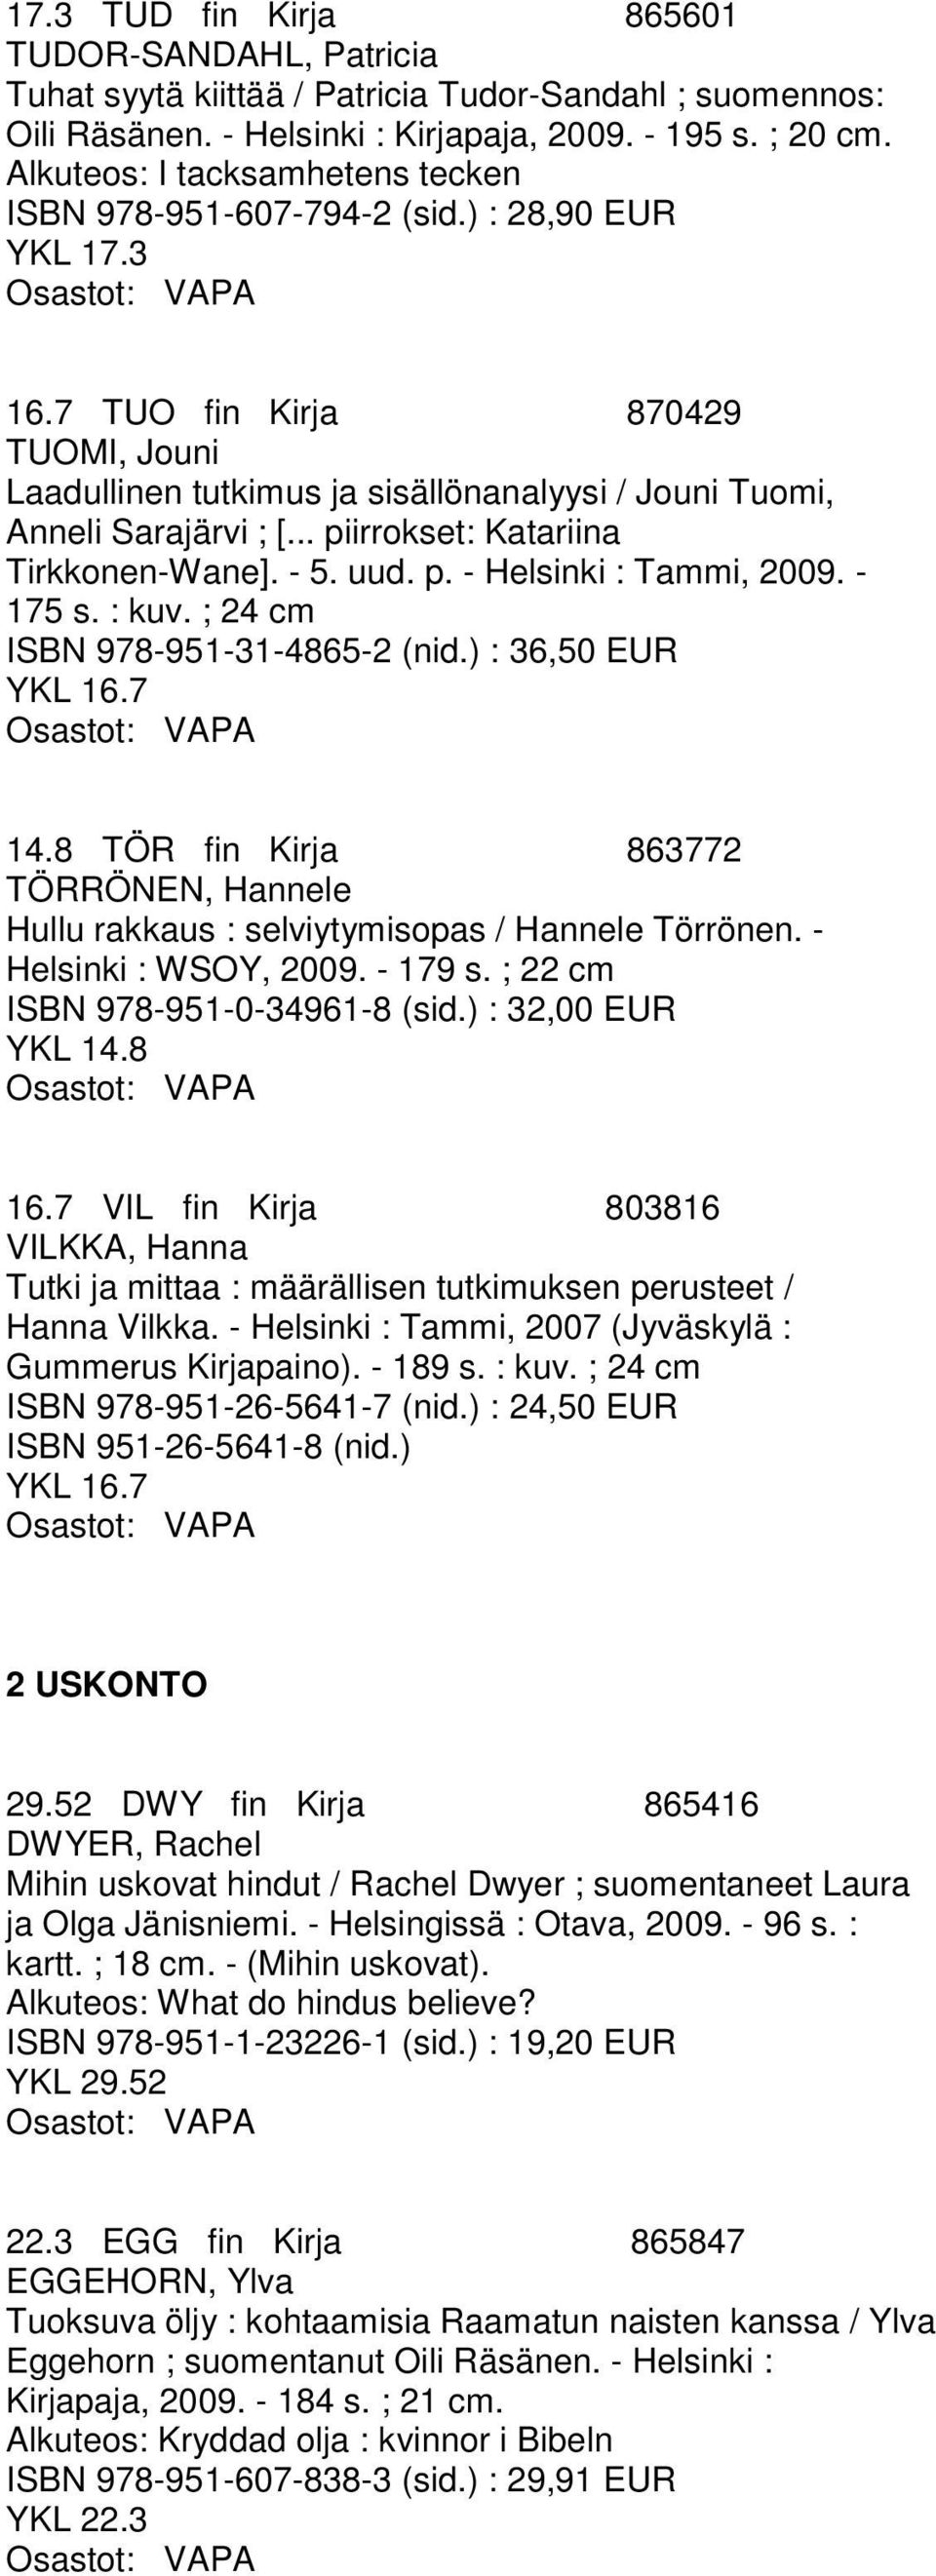 .. piirrokset: Katariina Tirkkonen-Wane]. - 5. uud. p. - Helsinki : Tammi, 2009. - 175 s. : kuv. ; 24 cm ISBN 978-951-31-4865-2 (nid.) : 36,50 EUR YKL 16.7 14.